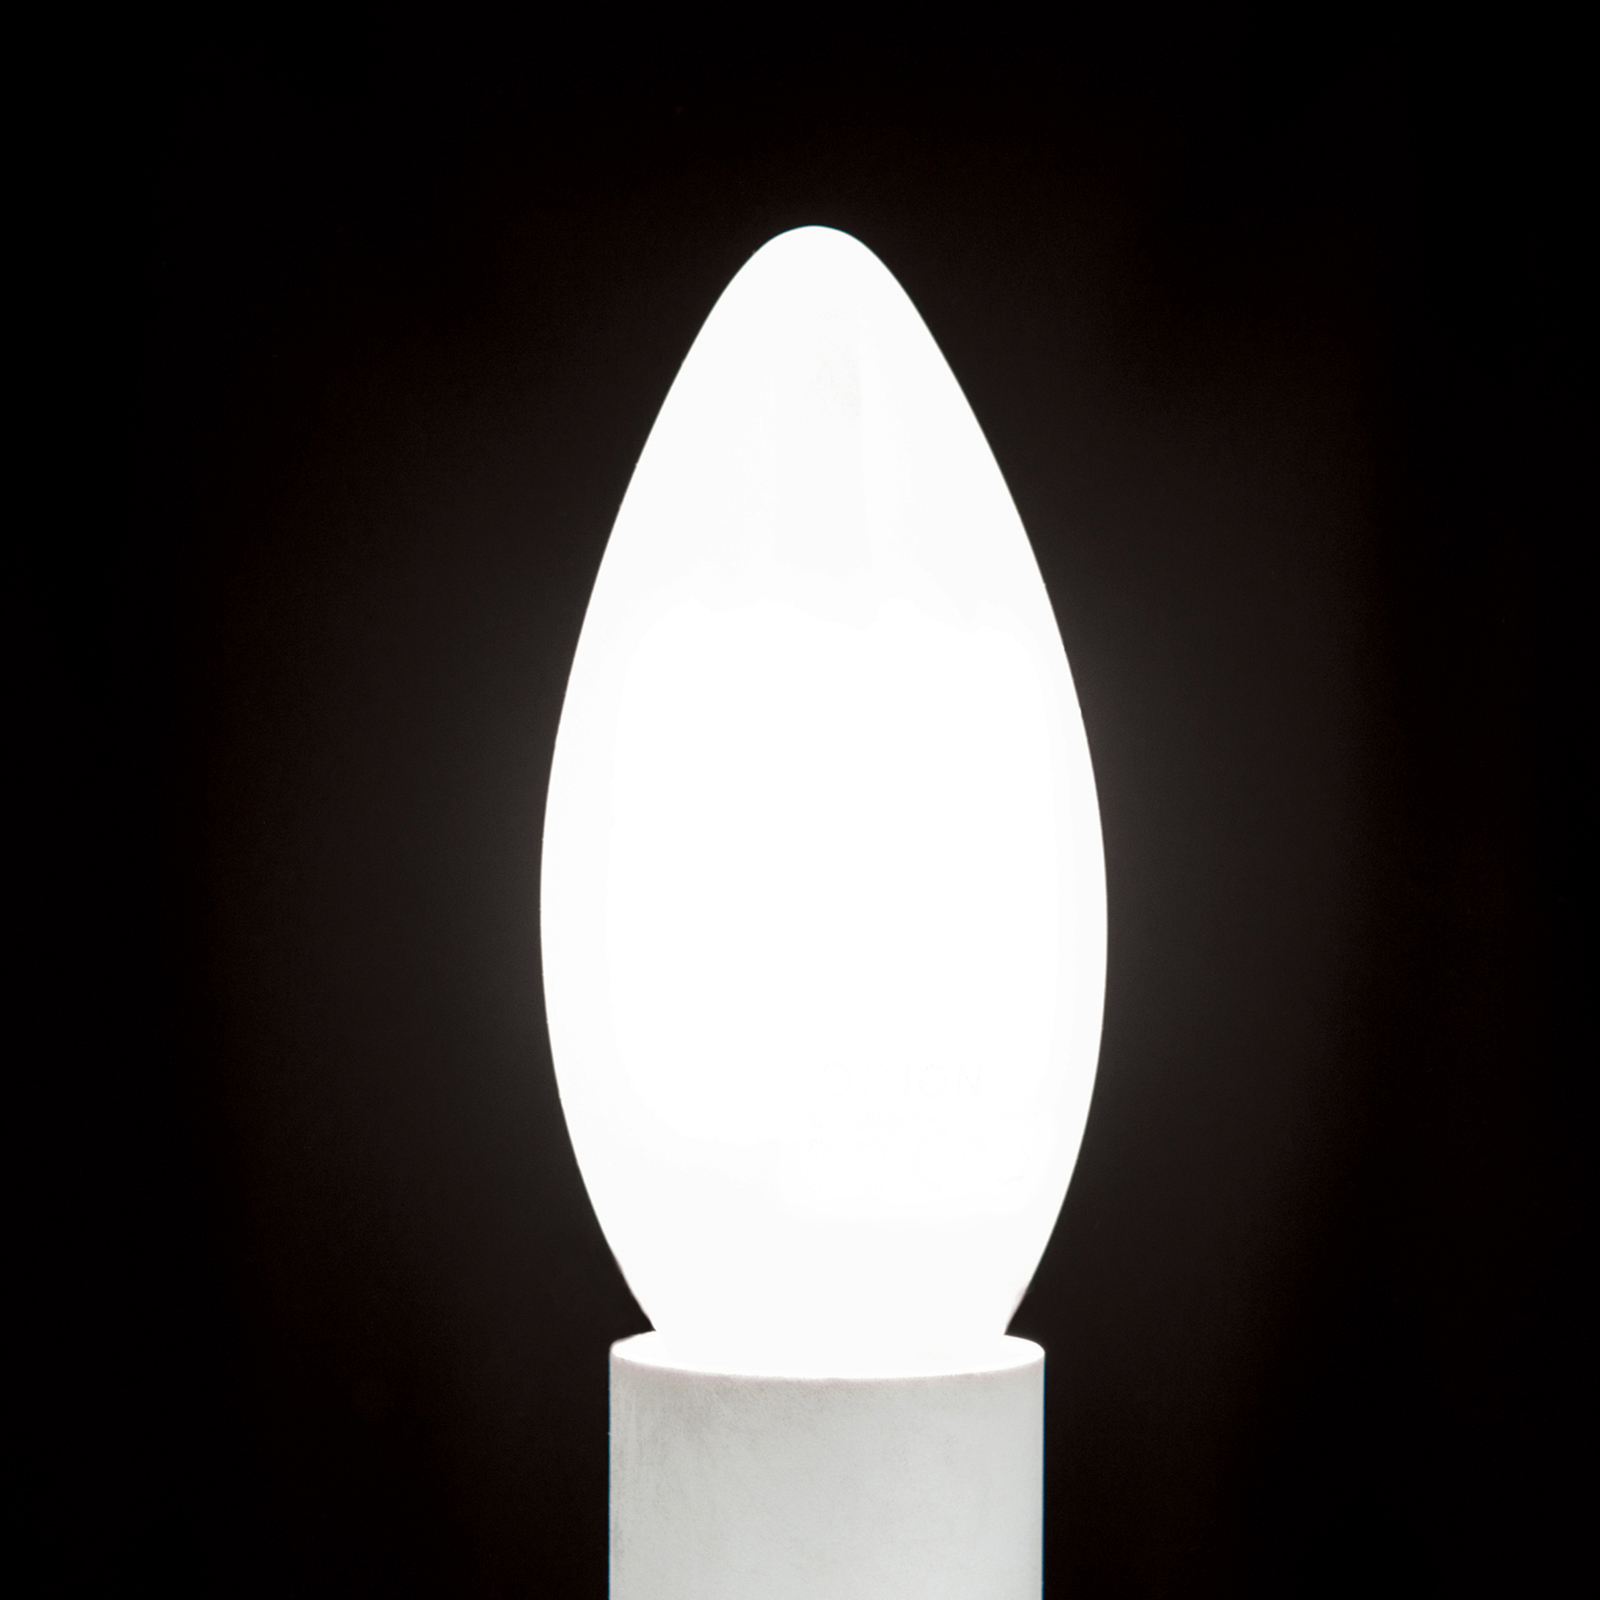 LED candela E14 4,5W 827 interno satinato, dimming